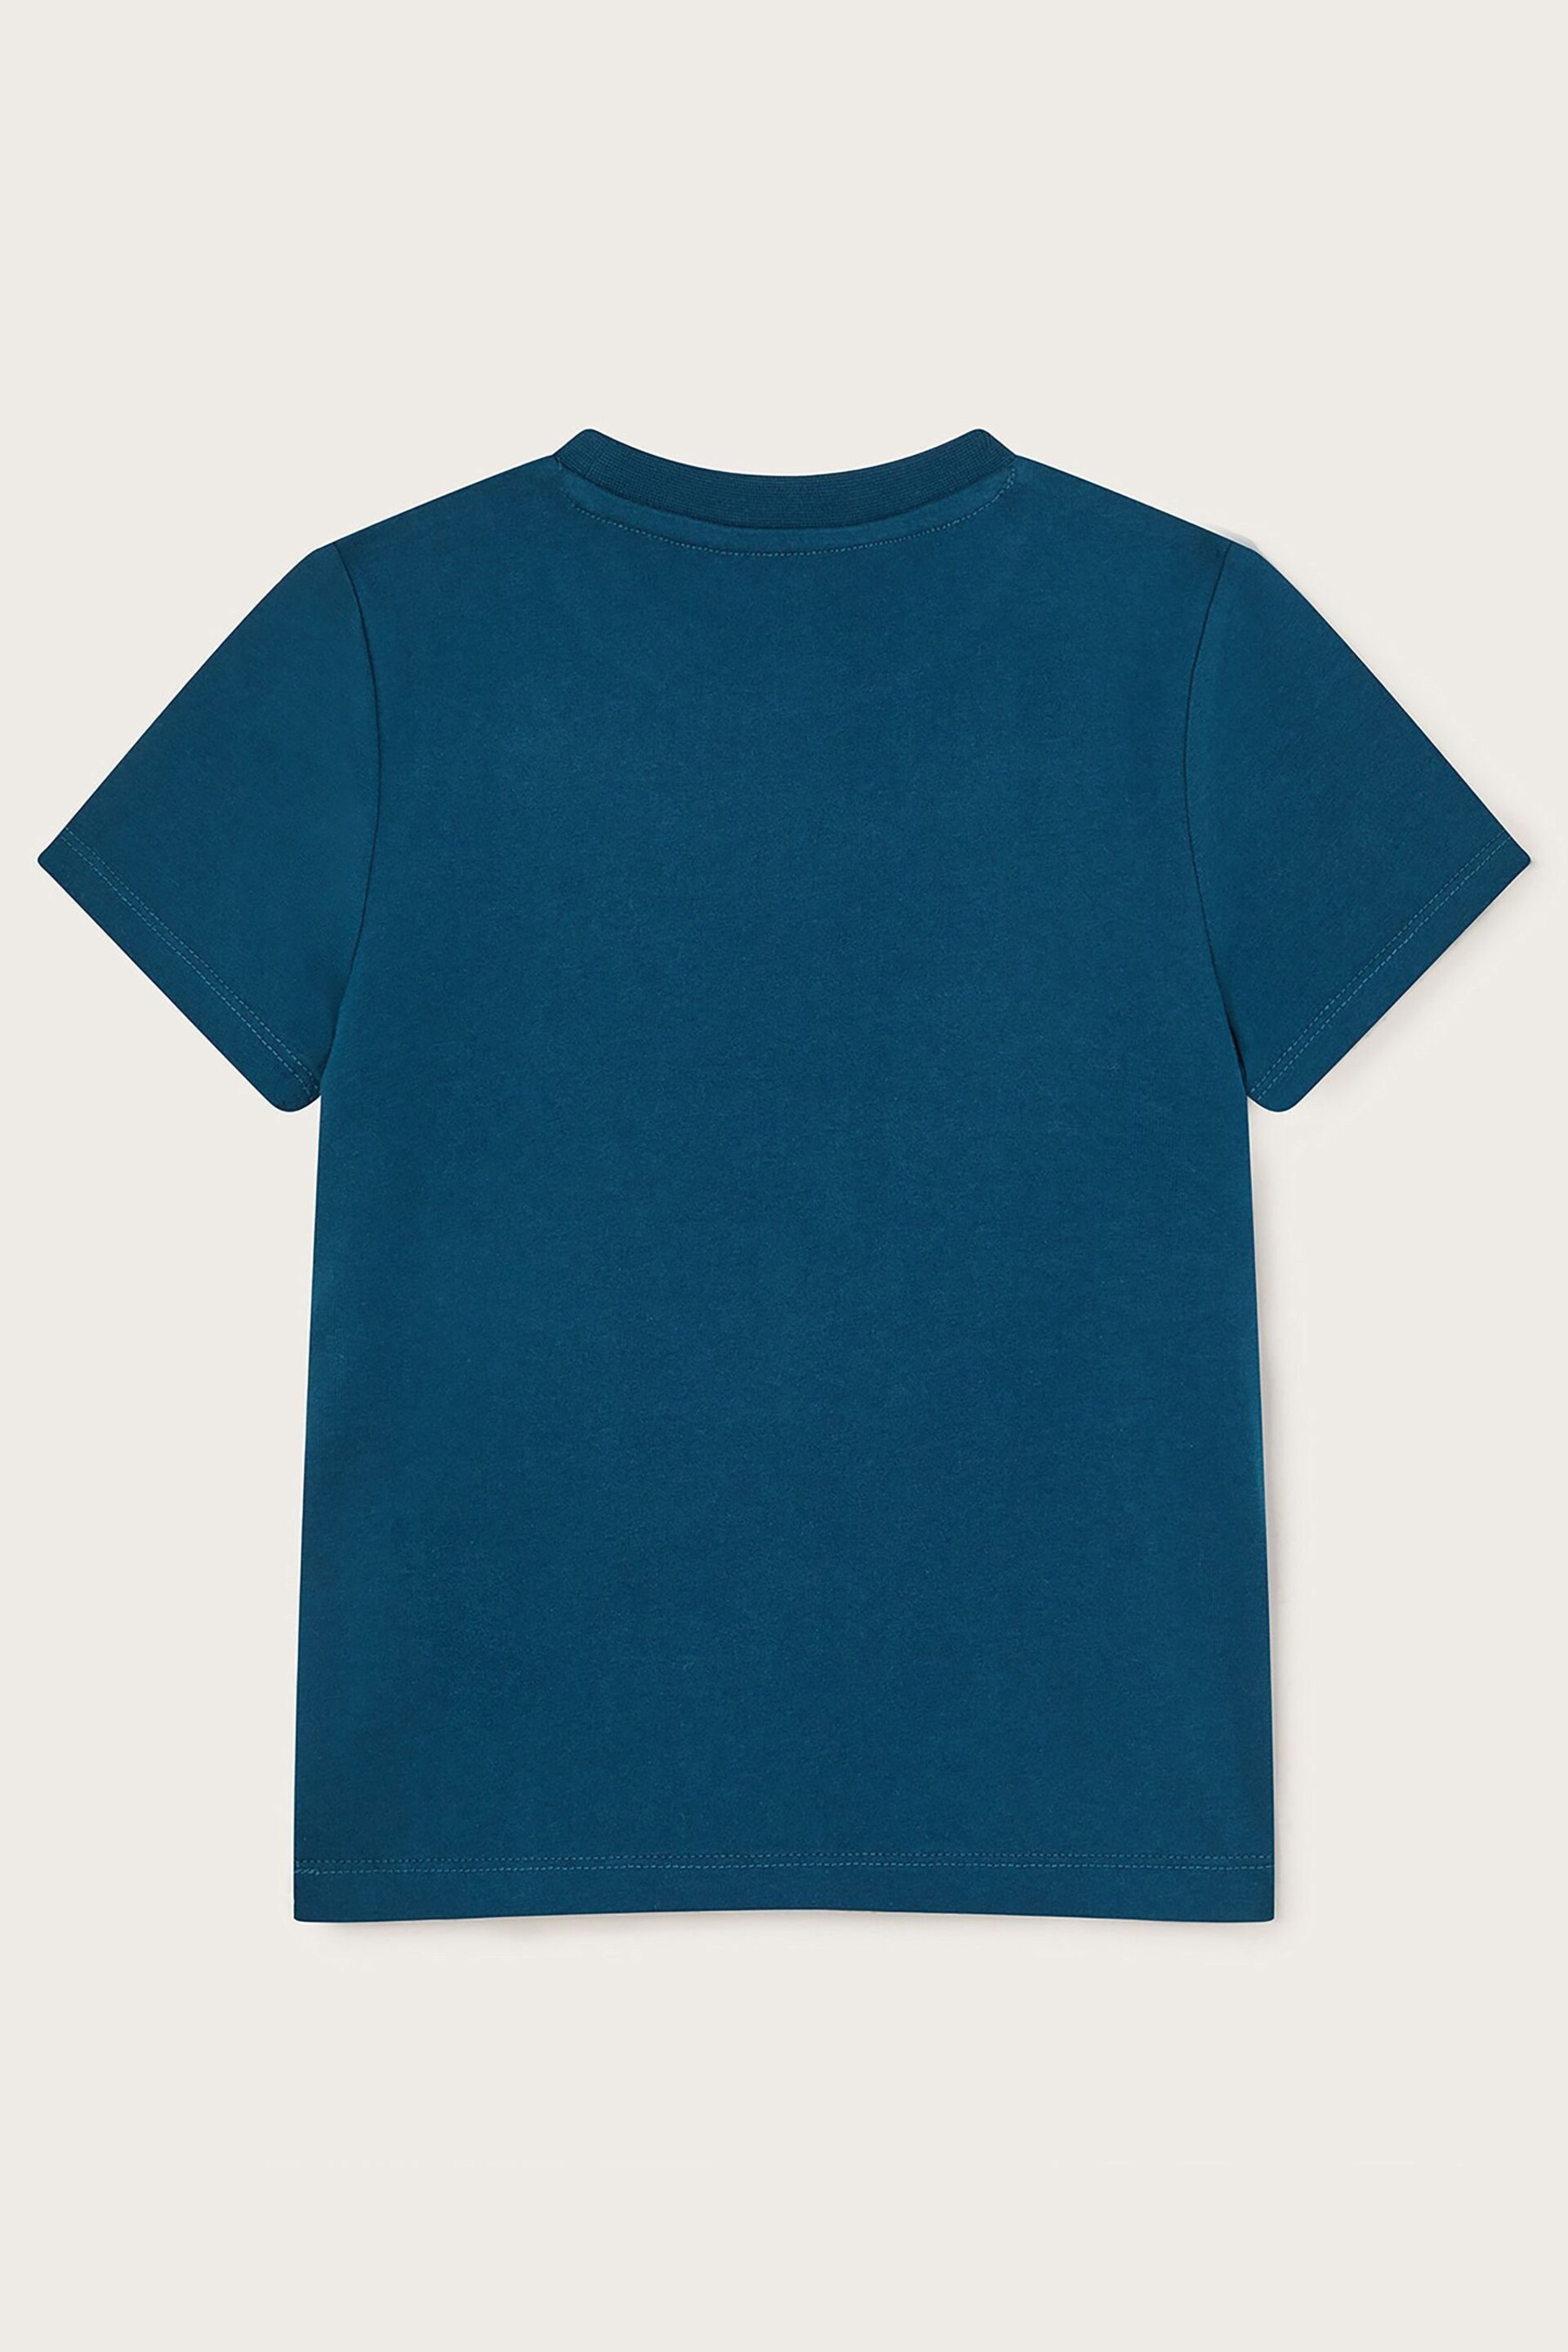 Monsoon Blue Turtle Appliqué T-Shirt - Image 2 of 3